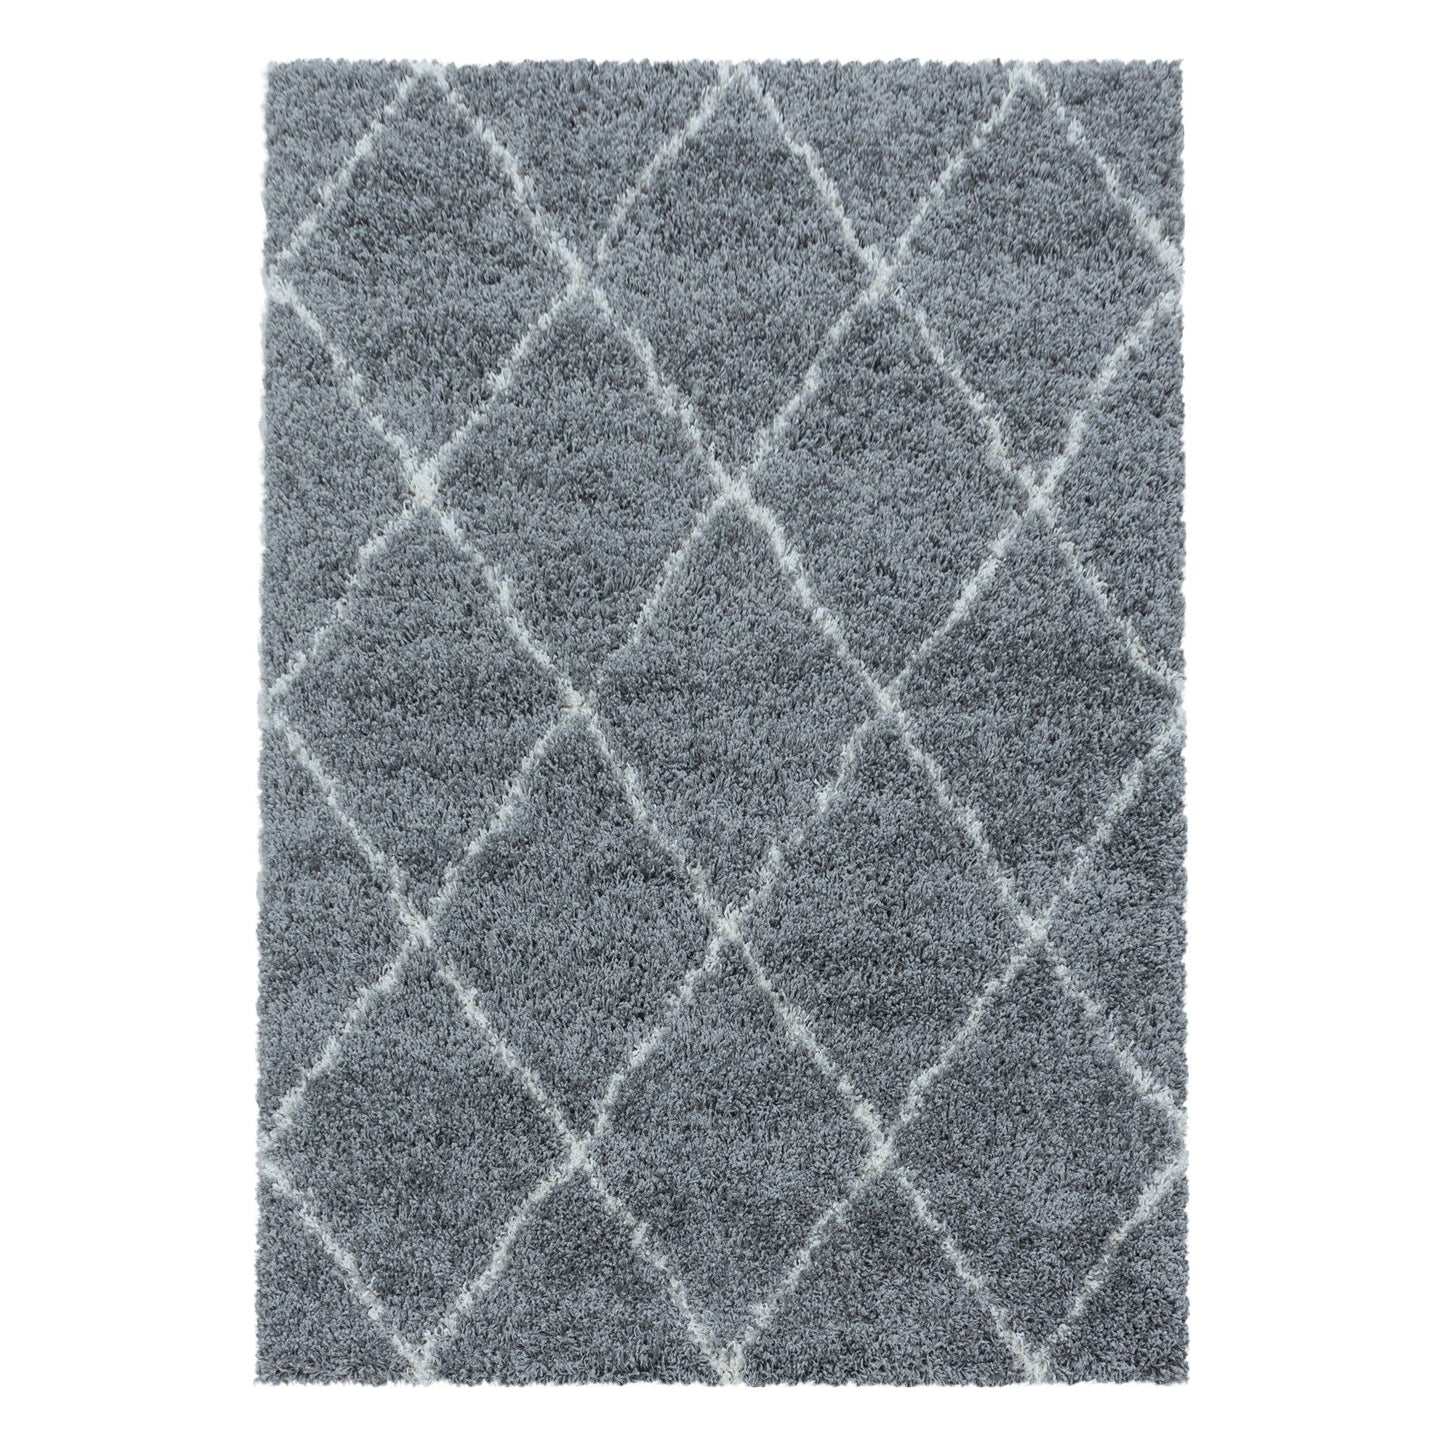 Wohnzimmerteppich Design Hochflor Teppich Muster Raute Flor Weich Farbe Grau